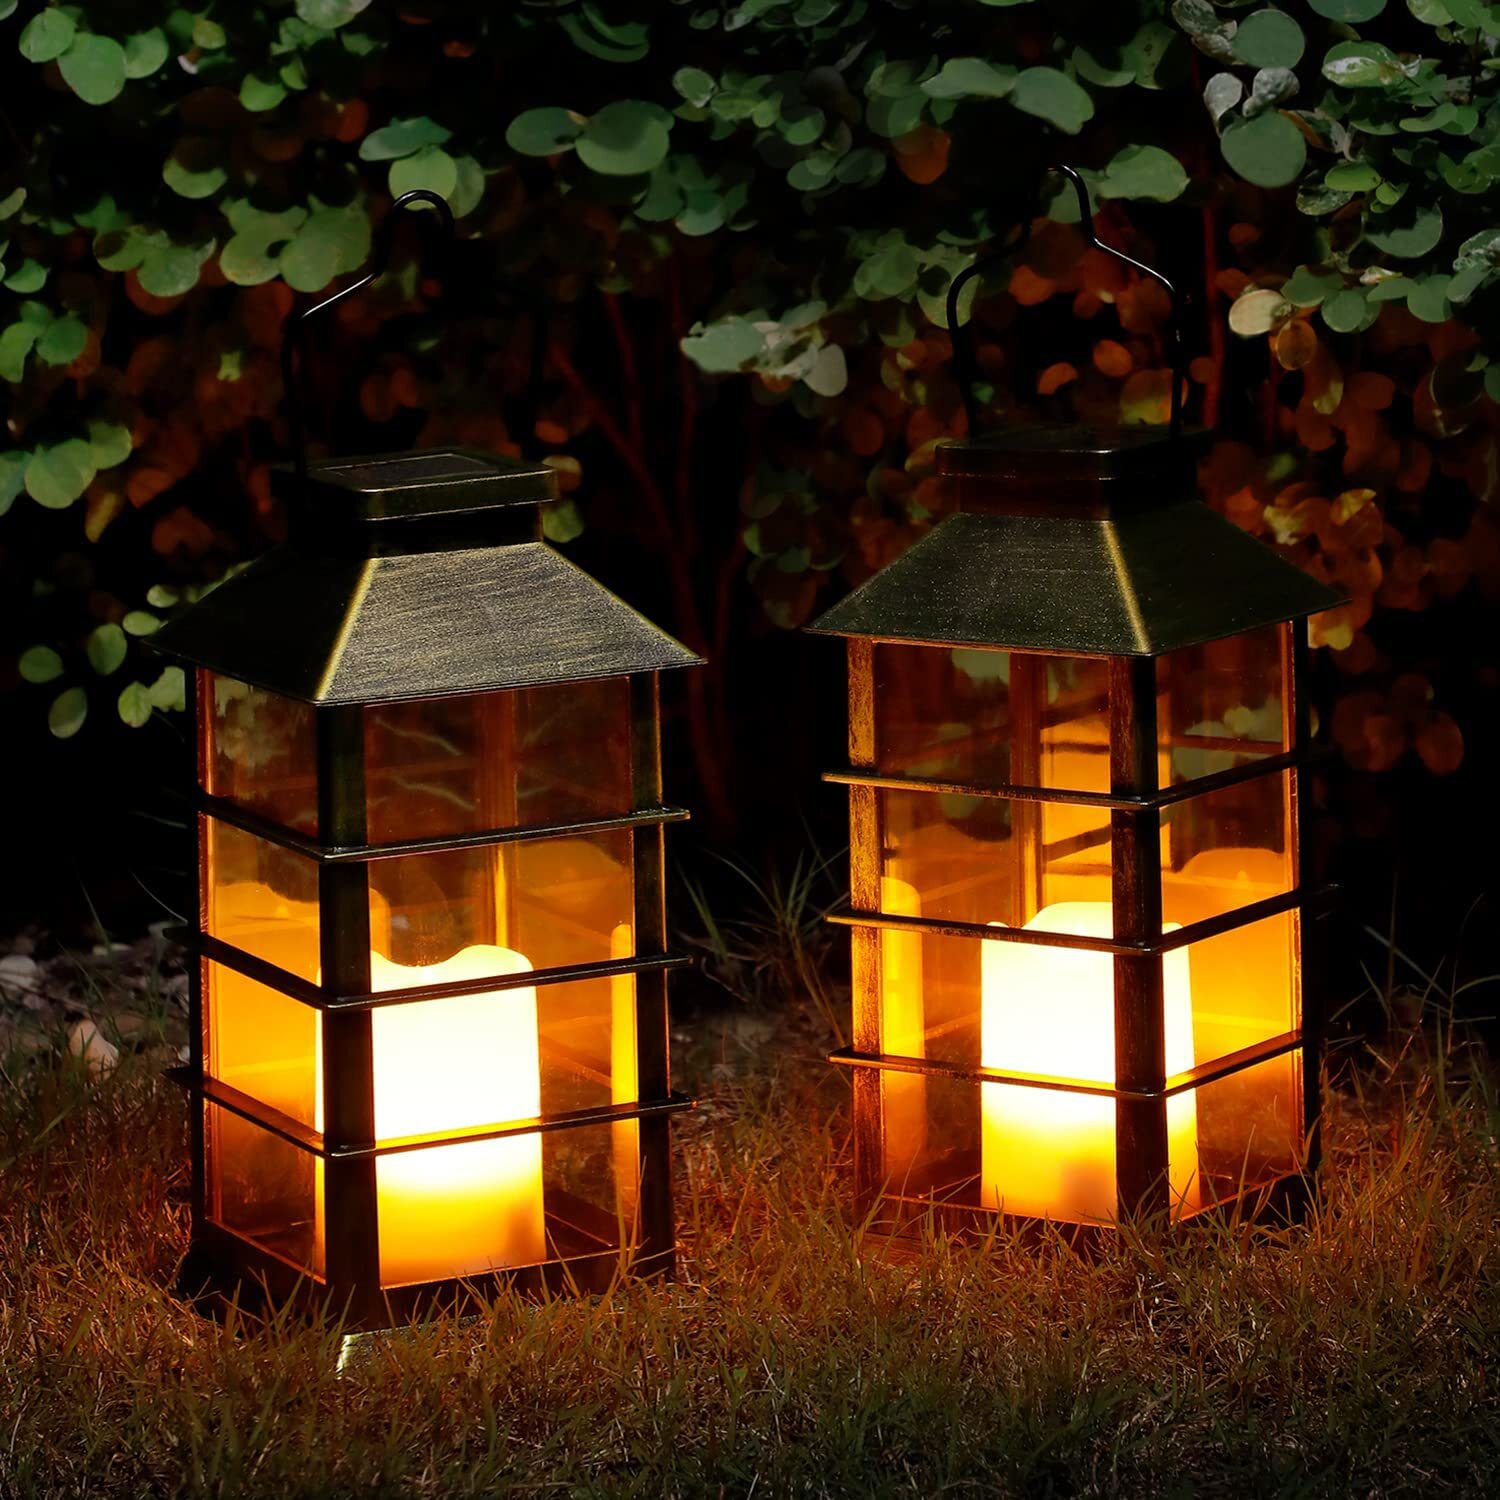 https://assets.wfcdn.com/im/43520245/compr-r85/1863/186354152/116-solar-powered-outdoor-lantern.jpg